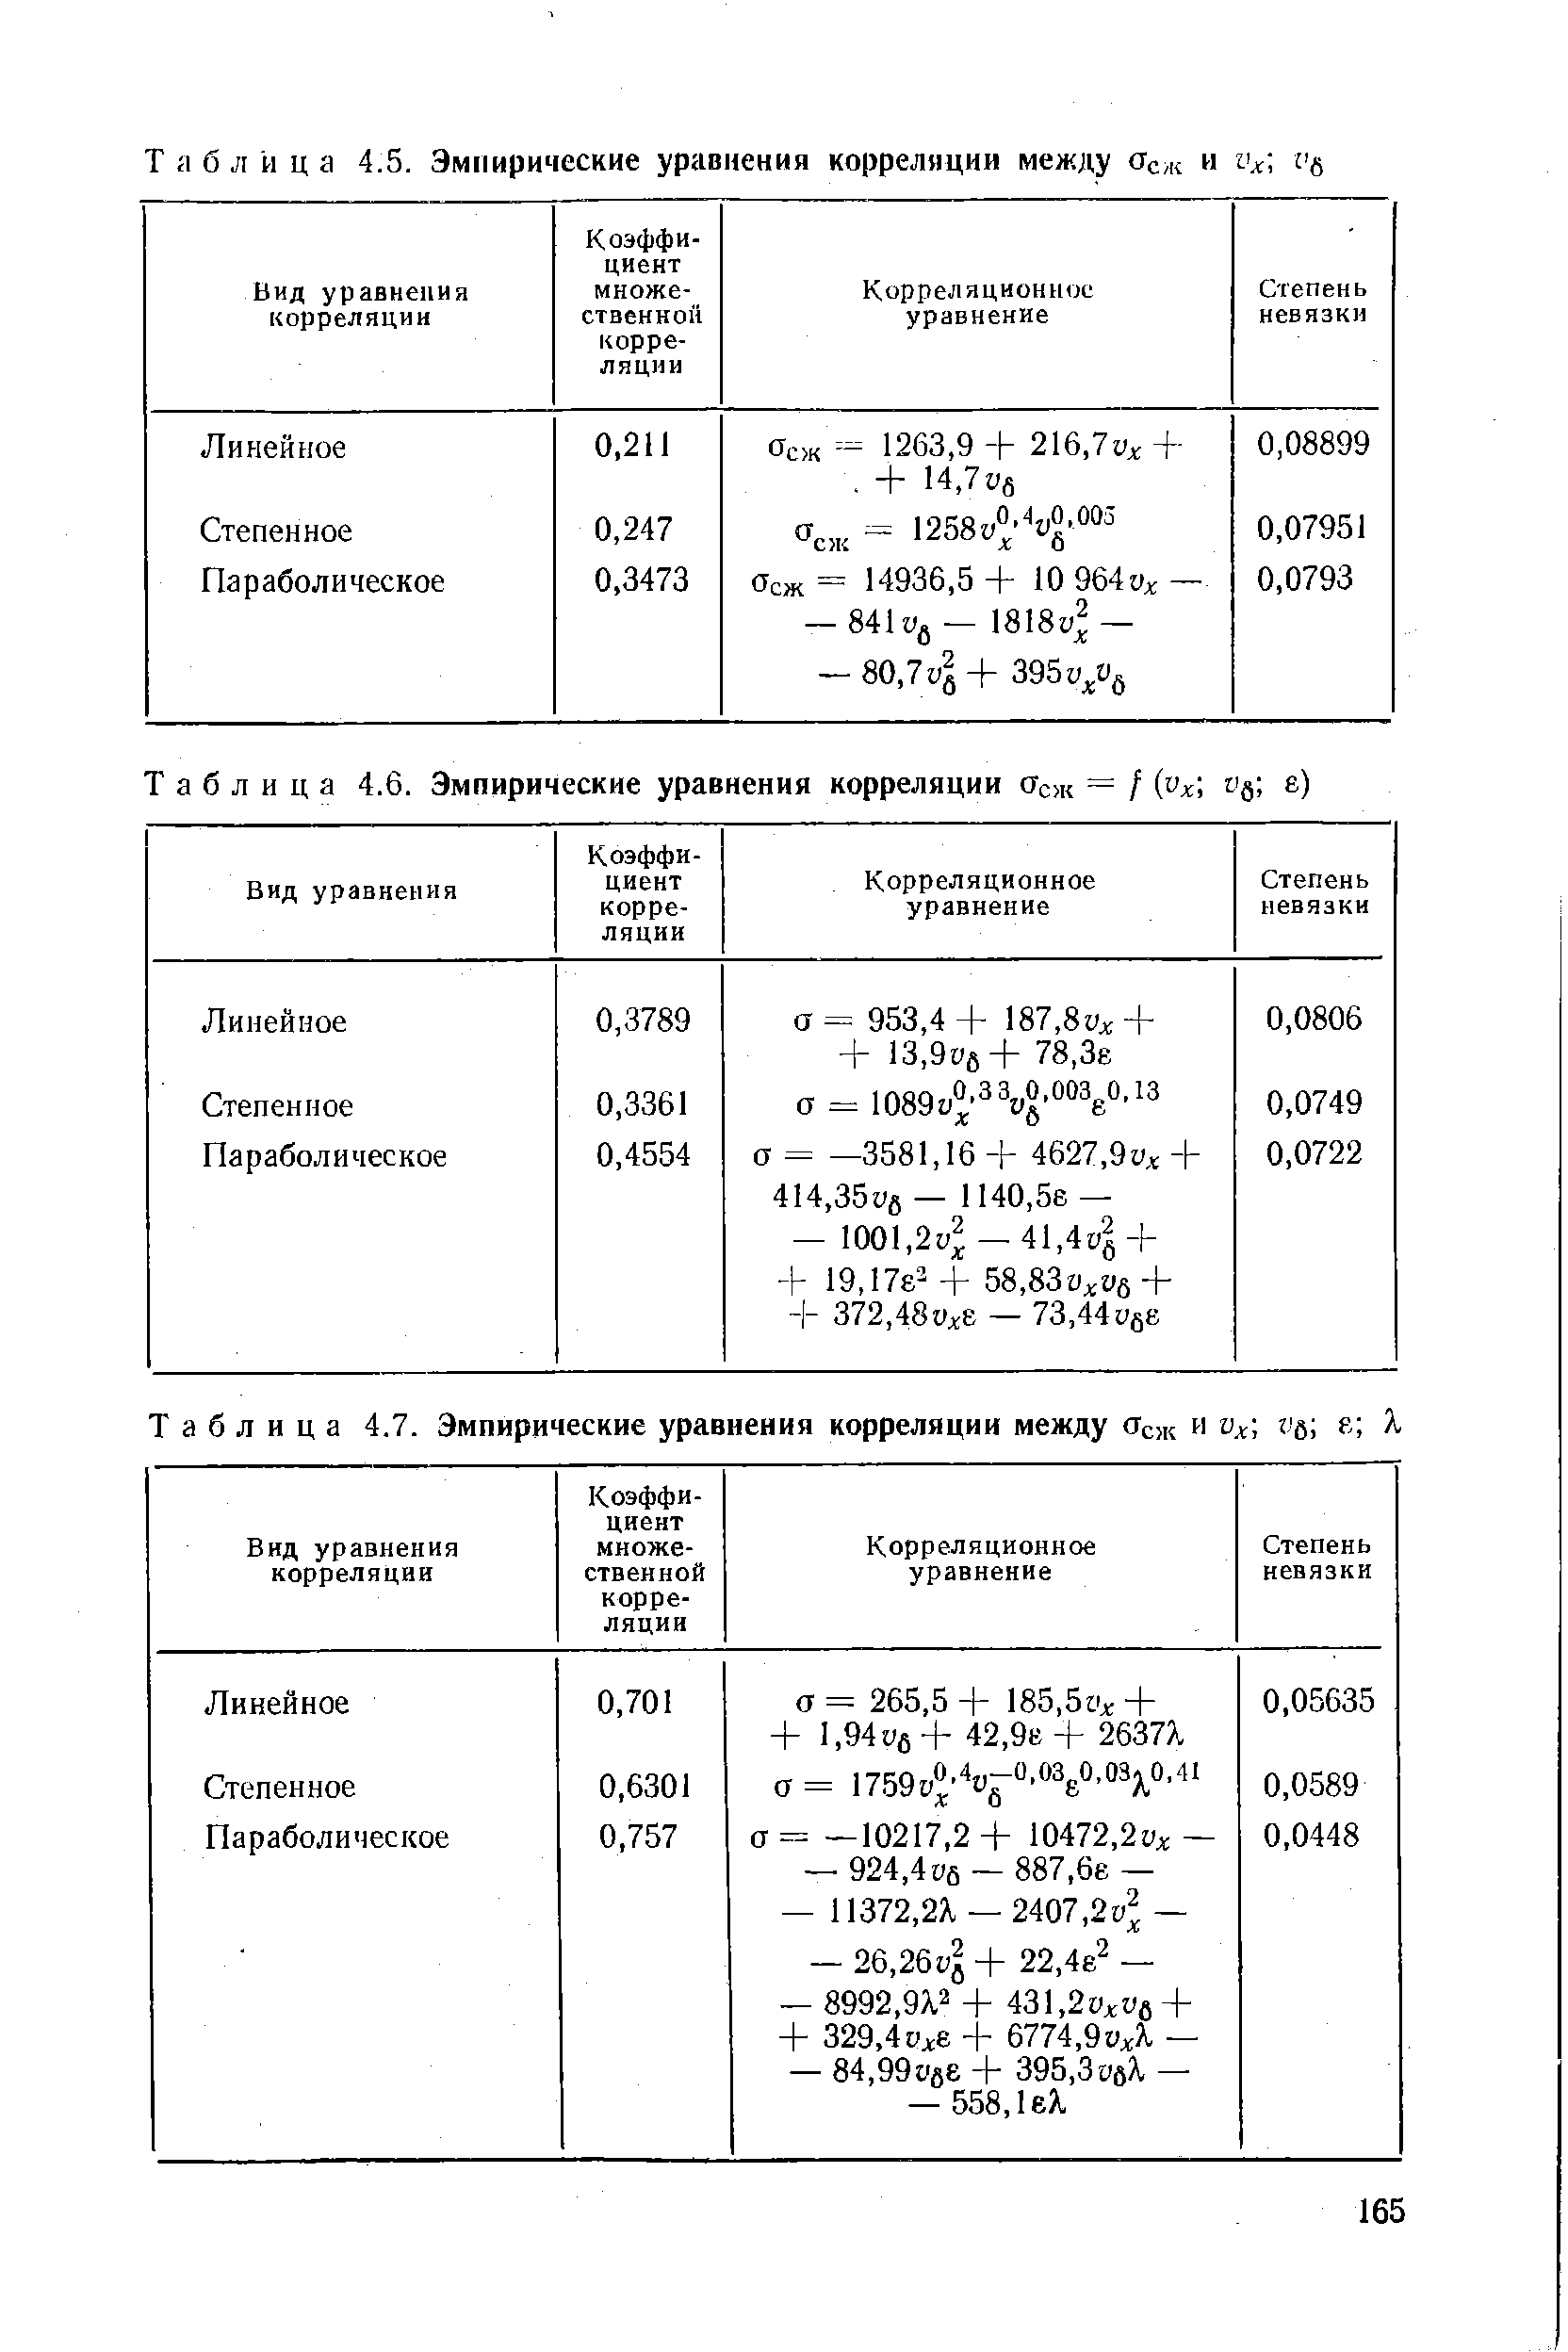 Таблица 4.6. Эмпирические уравнения корреляции Осж = / (ух1 е)
